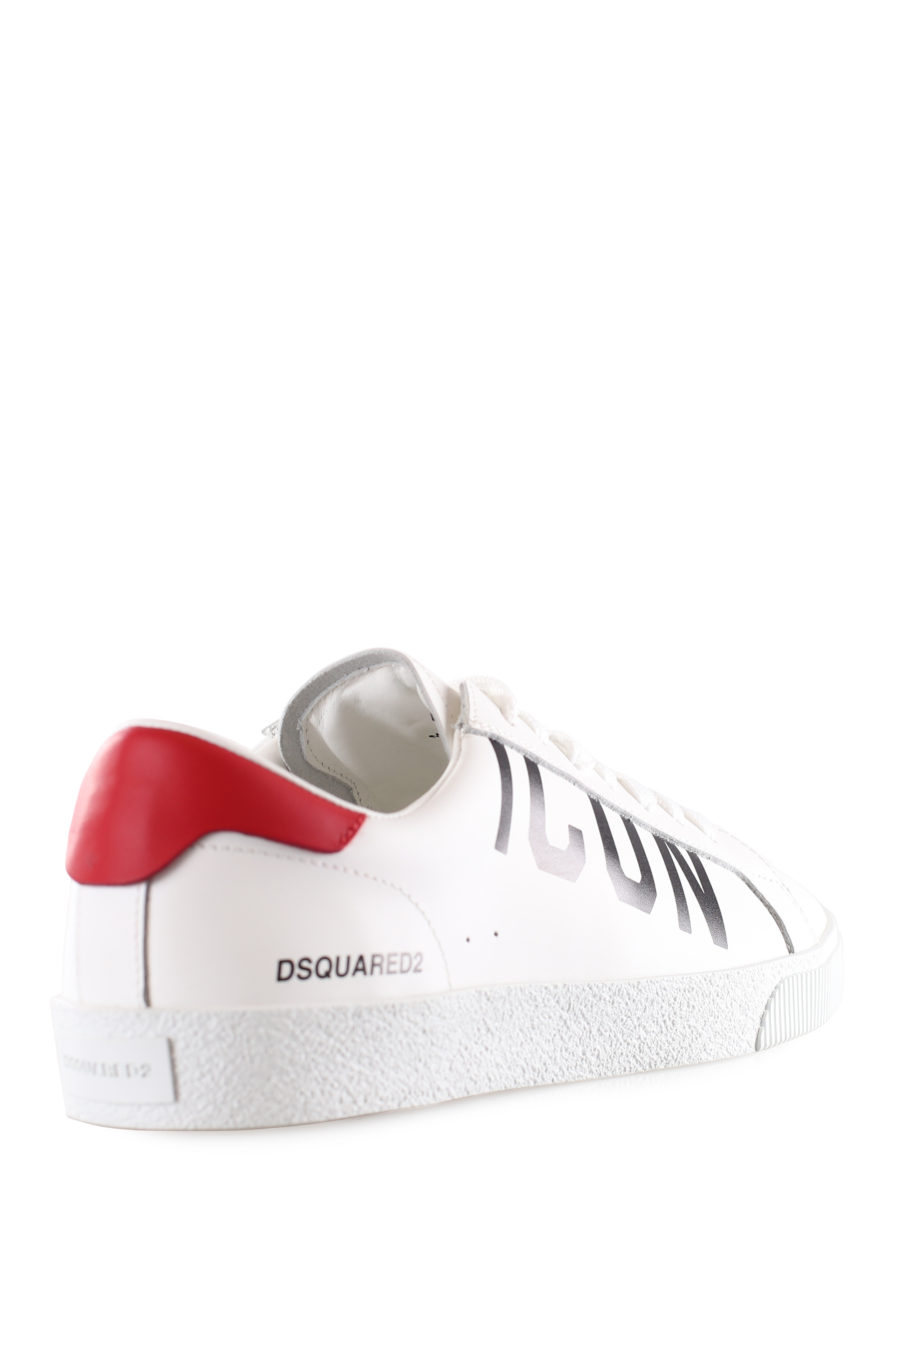 Baskets blanches avec logo "icon" en diagonale et détails rouges - IMG 9531